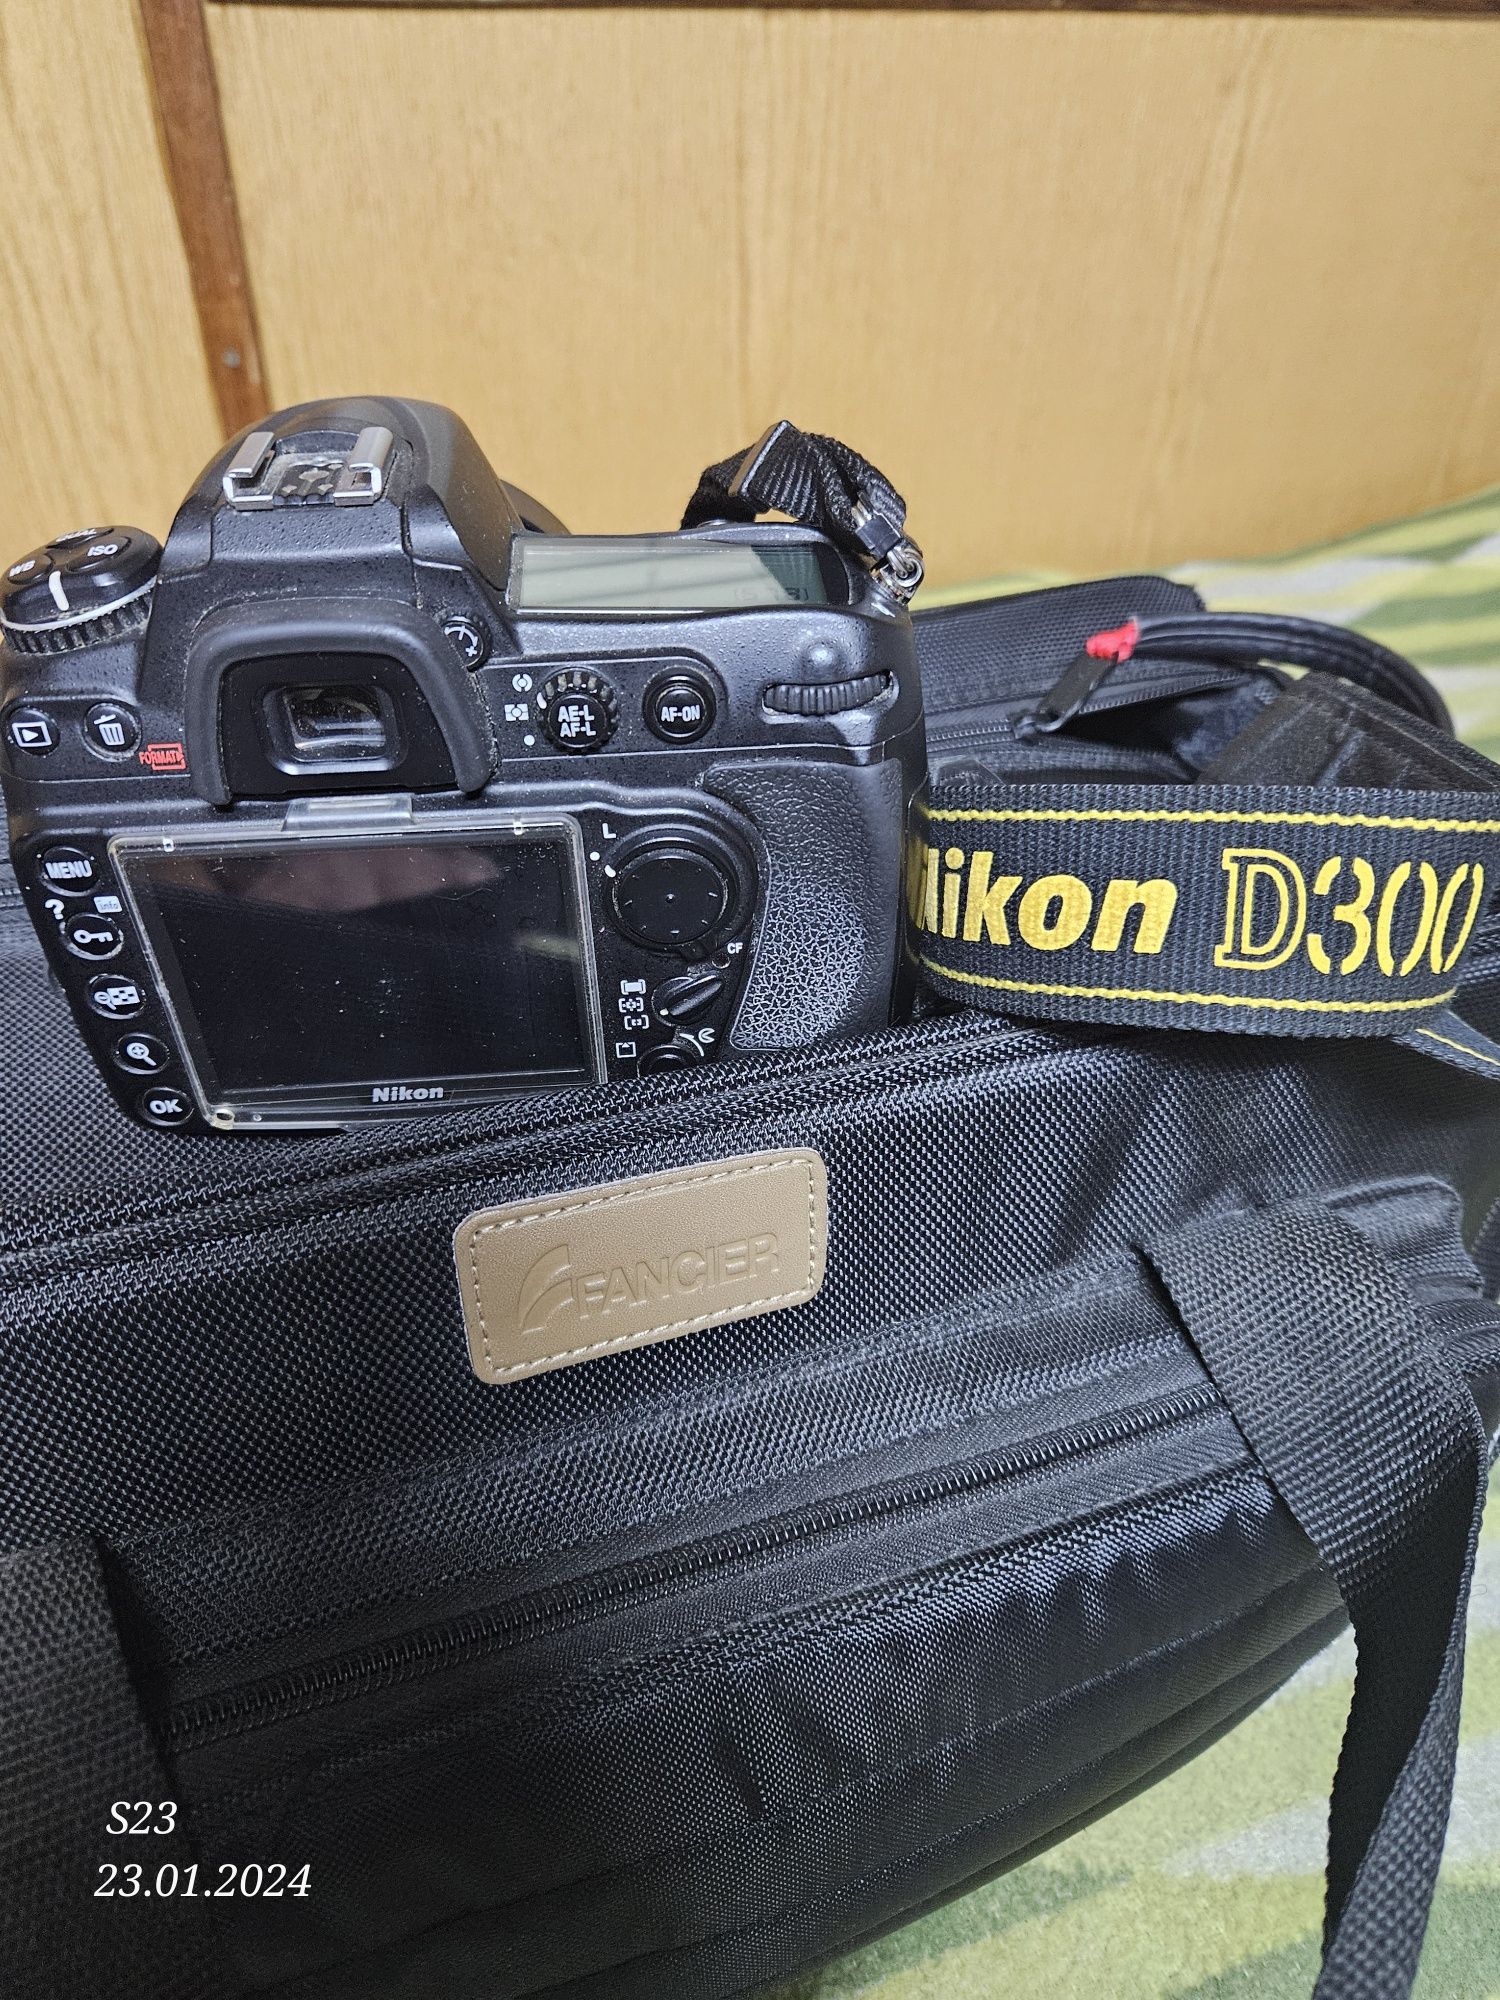 Nikon D300 ieftin, doar body, funcționează impecabil